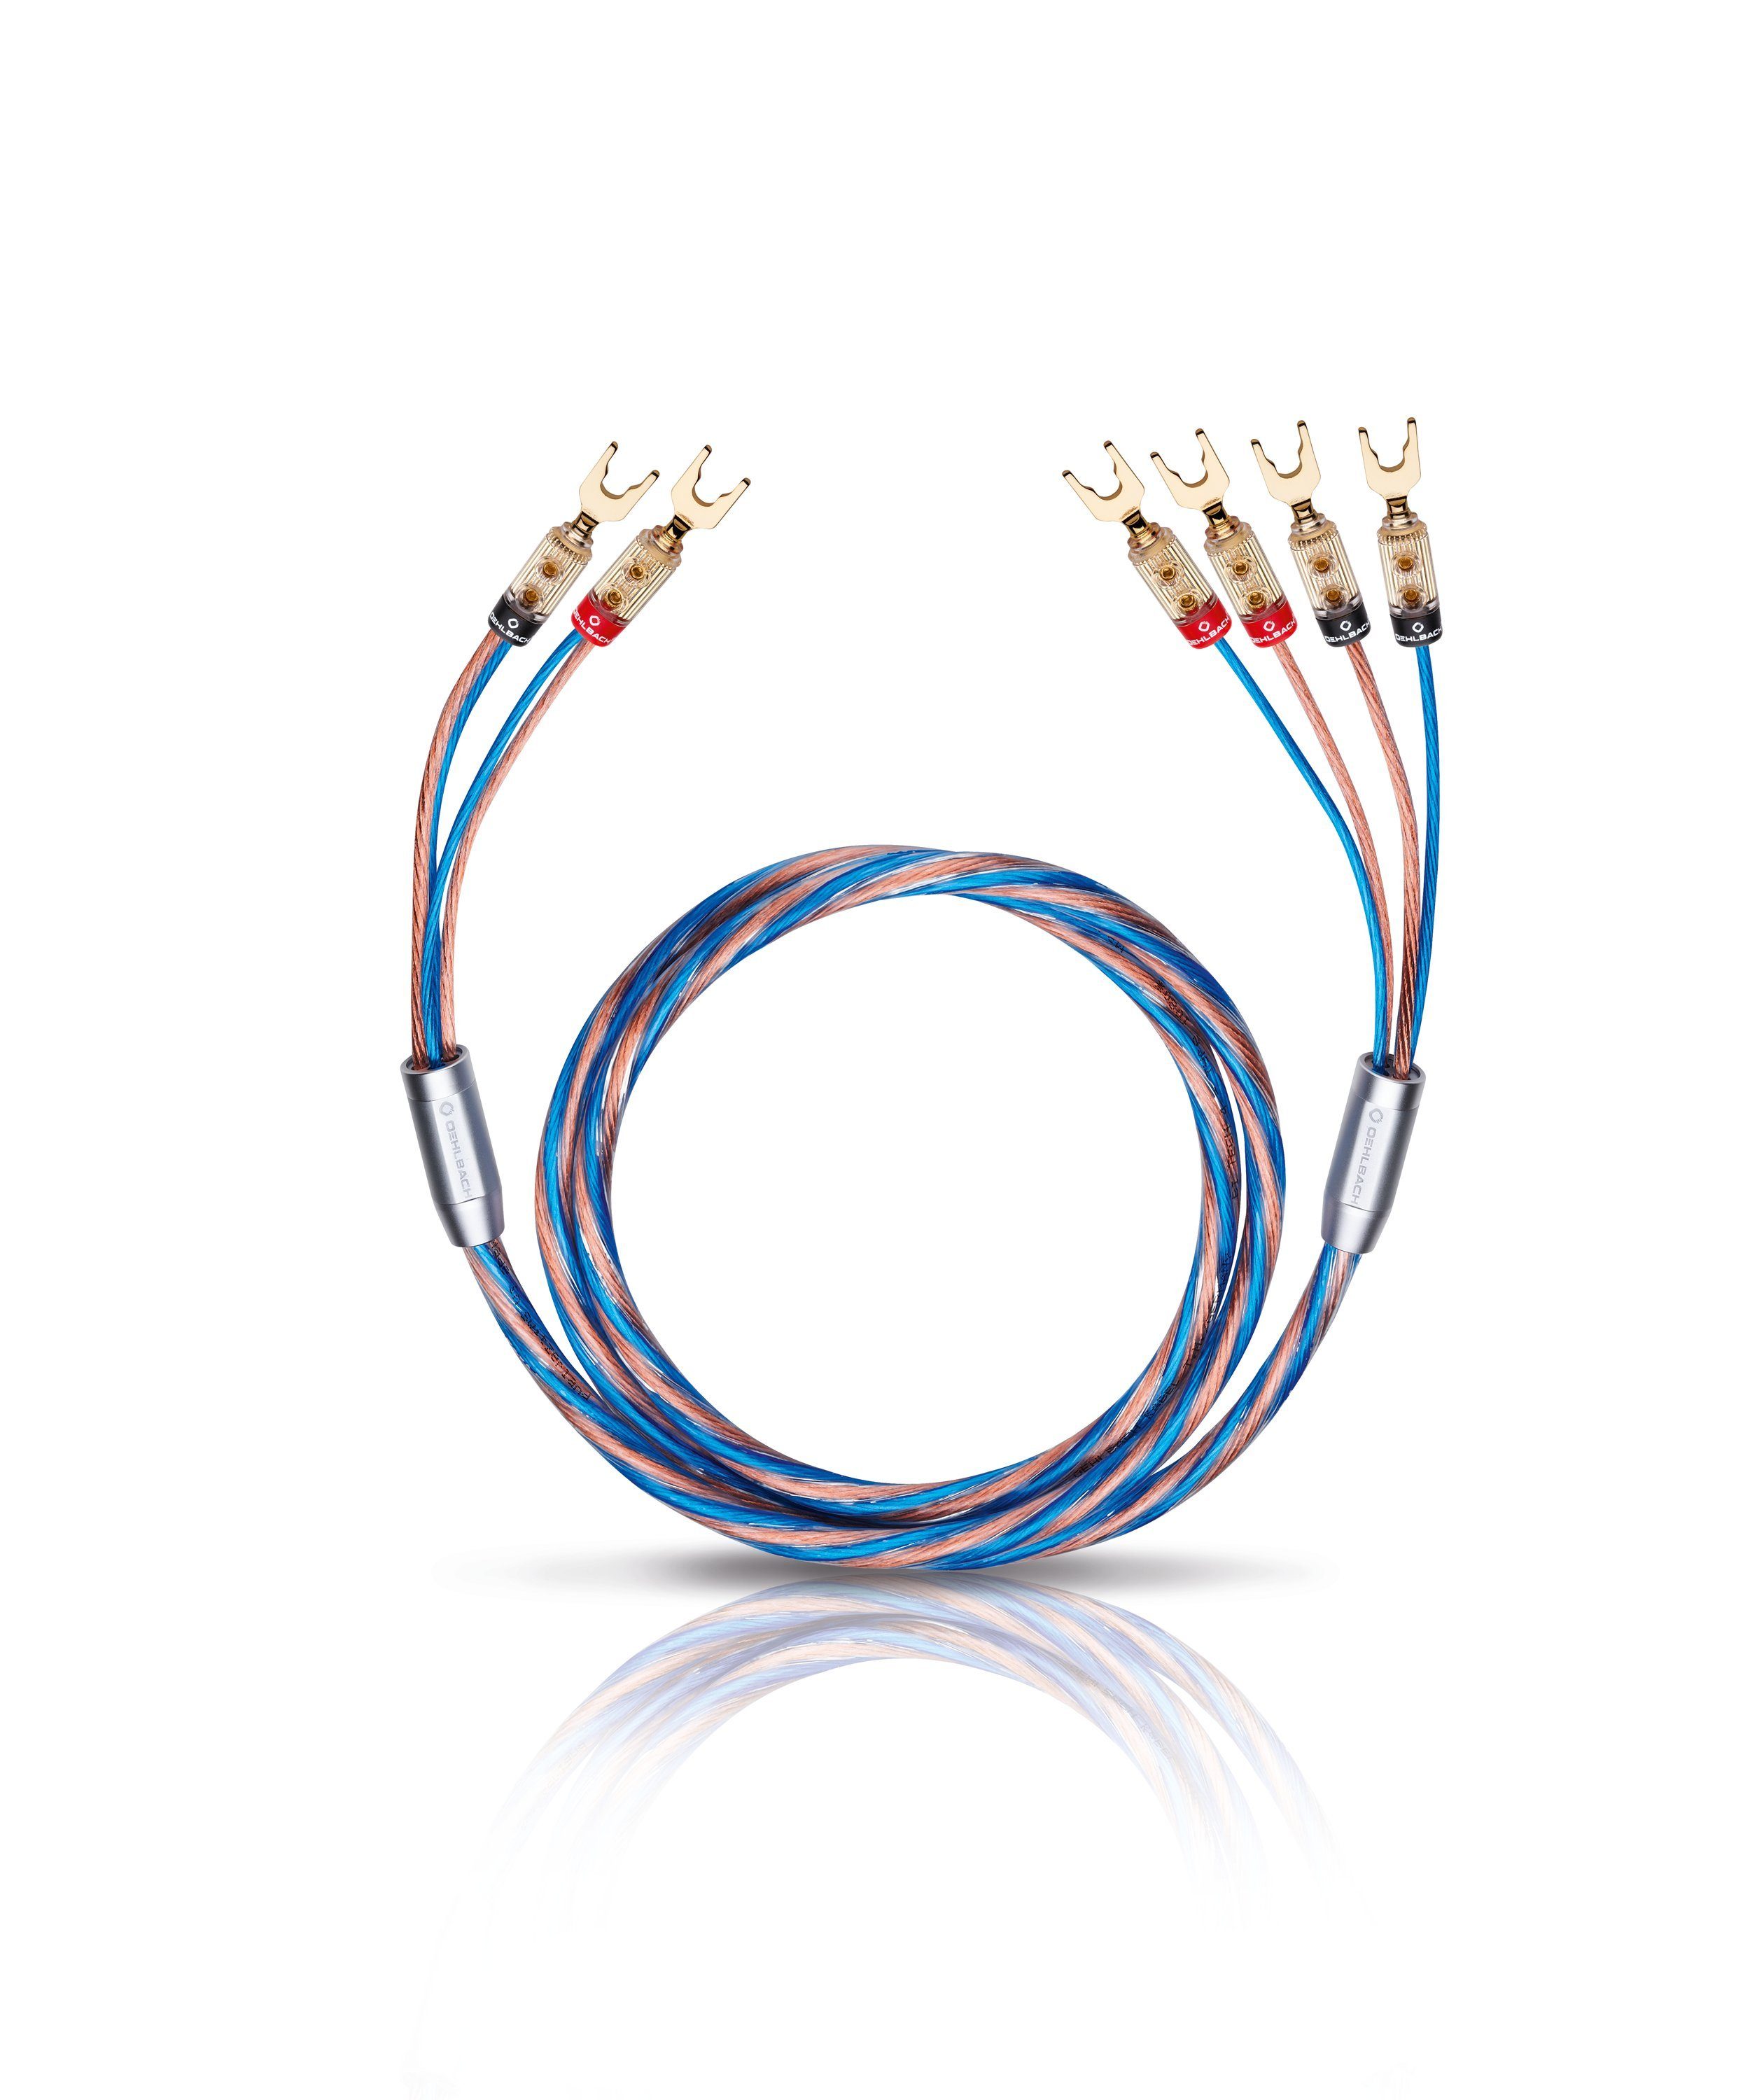 Oehlbach »Bi-Tech 4 L - Lautsprecherkabel-Set Bi-Wiring versilbert  (2x2,5/2x4,0 mm² mit Kabelschuh-Verbinder) 2 x 2 m - blau/kupfer«  Audio-Kabel, (200 cm) online kaufen | OTTO